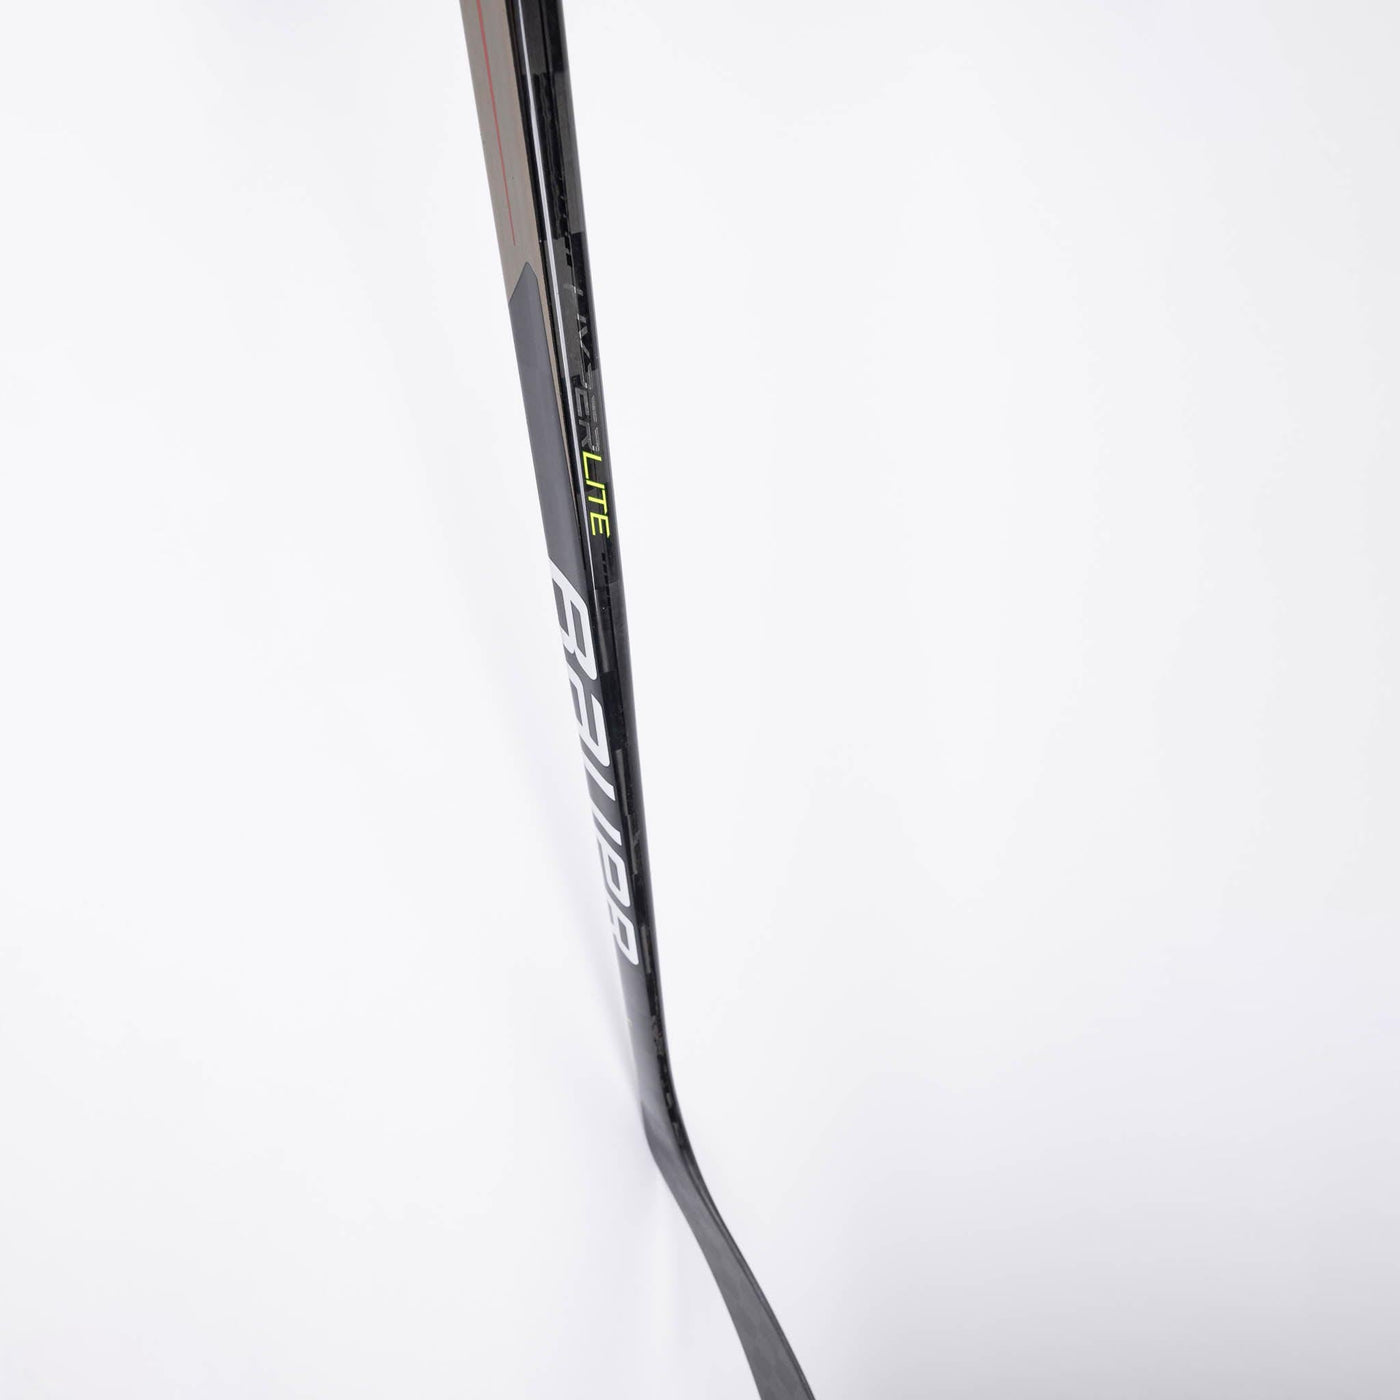 Bauer Vapor HyperLite Junior Hockey Stick - 50 Flex